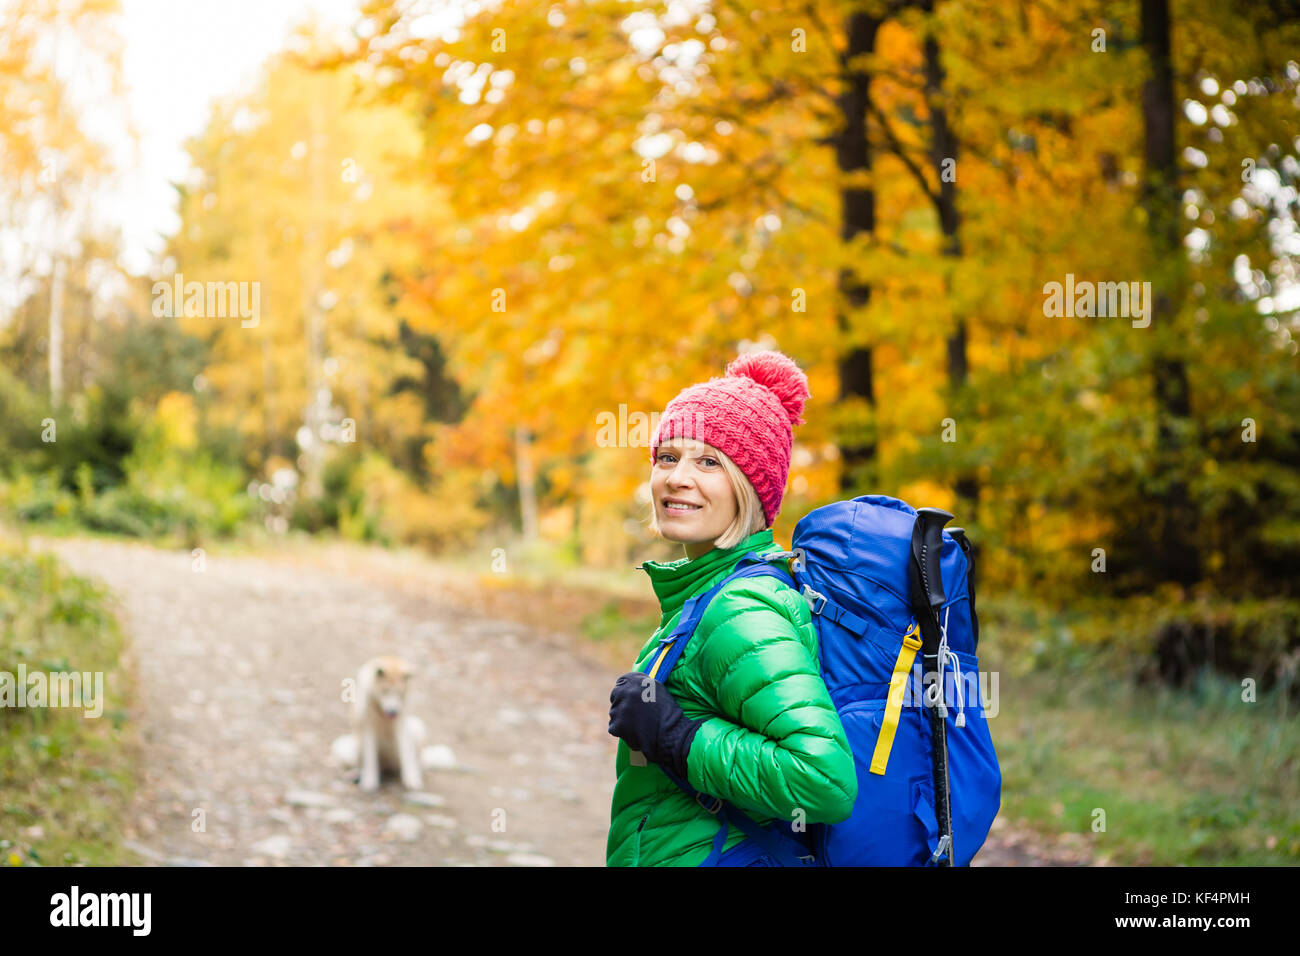 Wandern Frau mit Rucksack, Kamera und inspirierende Herbst goldene Wälder. Fitness Reisen und gesunden Lebensstil im Freien im Herbst Saison. Trav Stockfoto